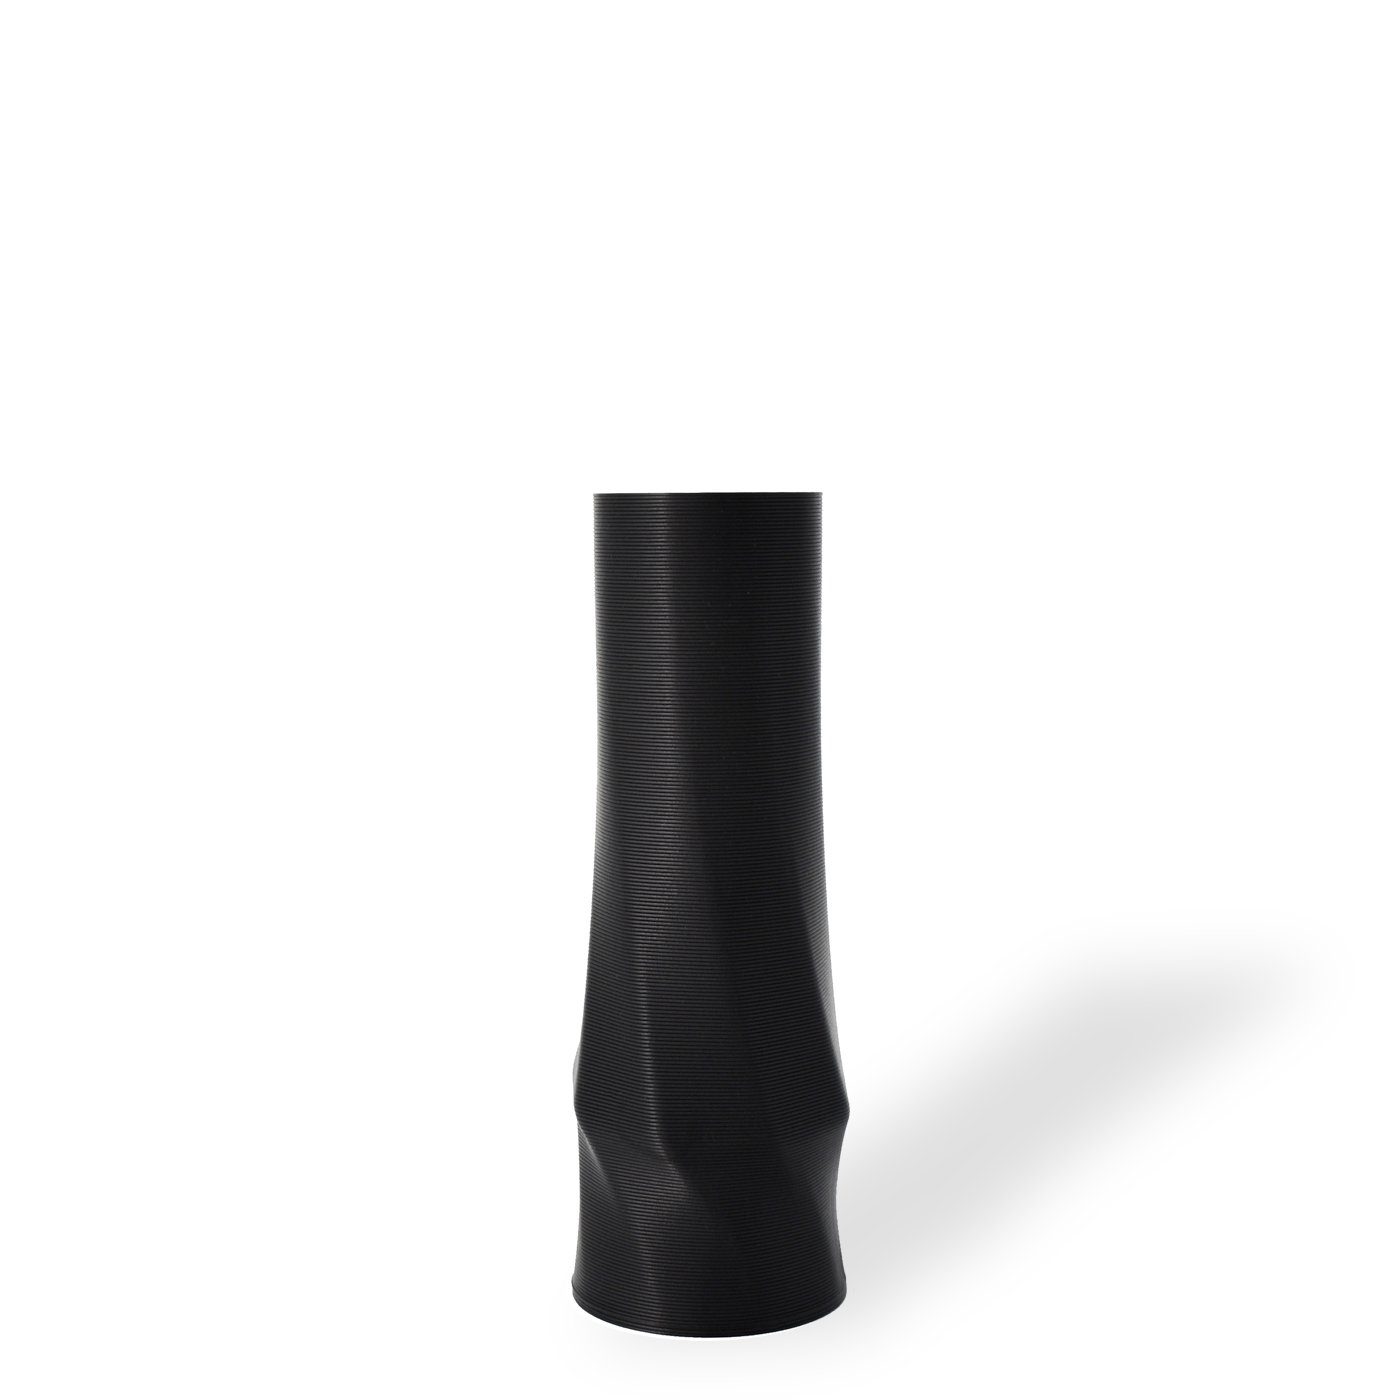 Shapes - Decorations Dekovase the vase - circle (basic), 3D Vasen, viele Farben, 100% 3D-Druck (Einzelmodell, 1 Vase), Wasserdicht; Leichte Struktur innerhalb des Materials (Rillung) Schwarz